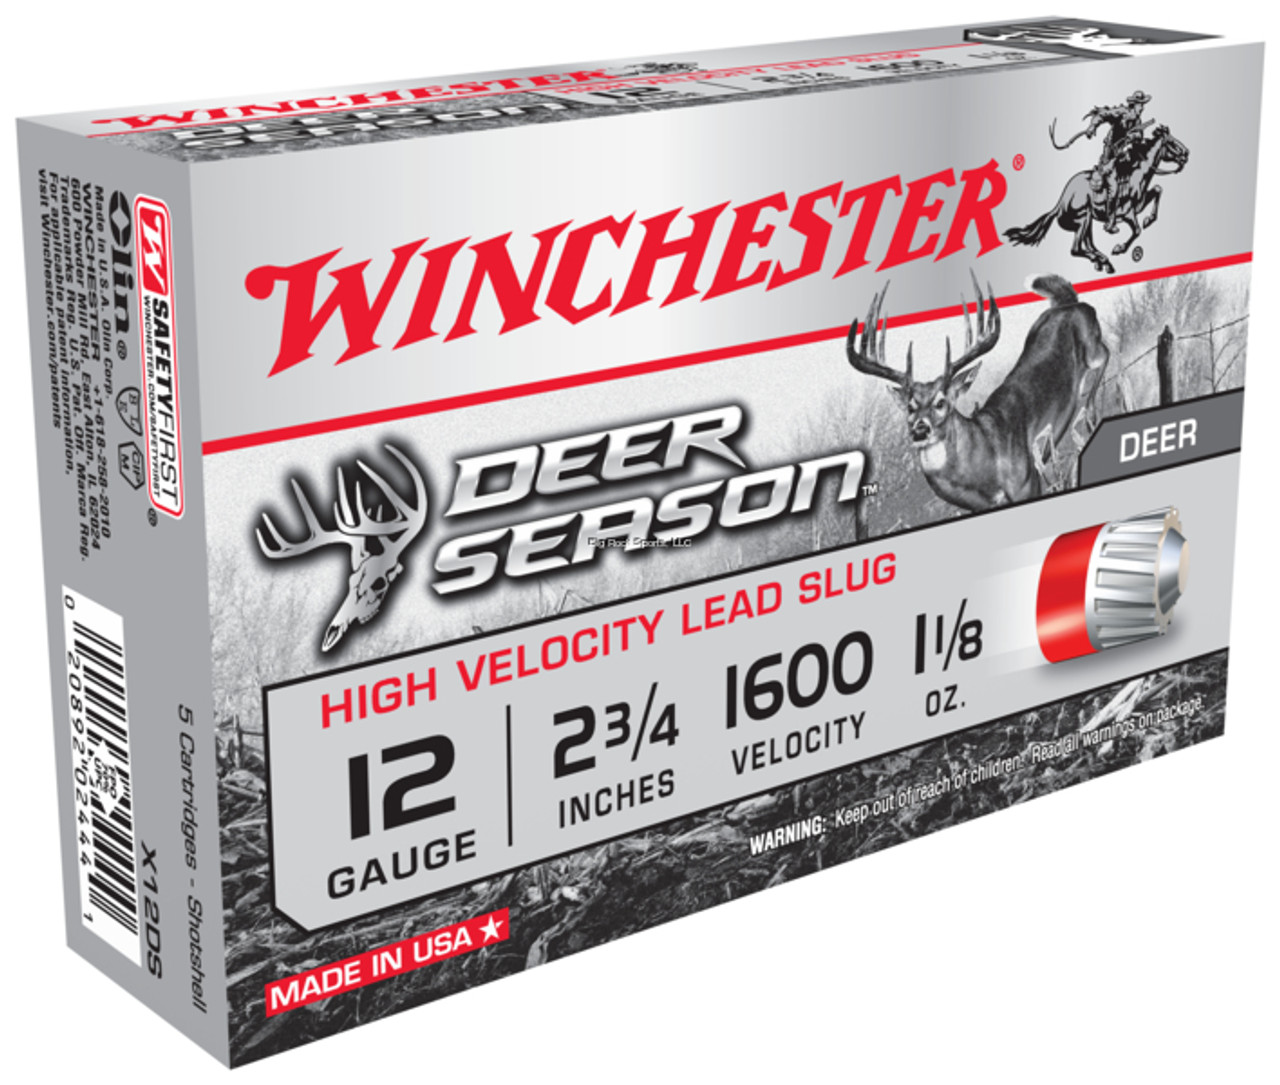 Winchester Deer Season Rifled Slug 12 GA, 2 3/4 in, 1 1/8 oz slug, 1600 fps, 5 Rnd per box